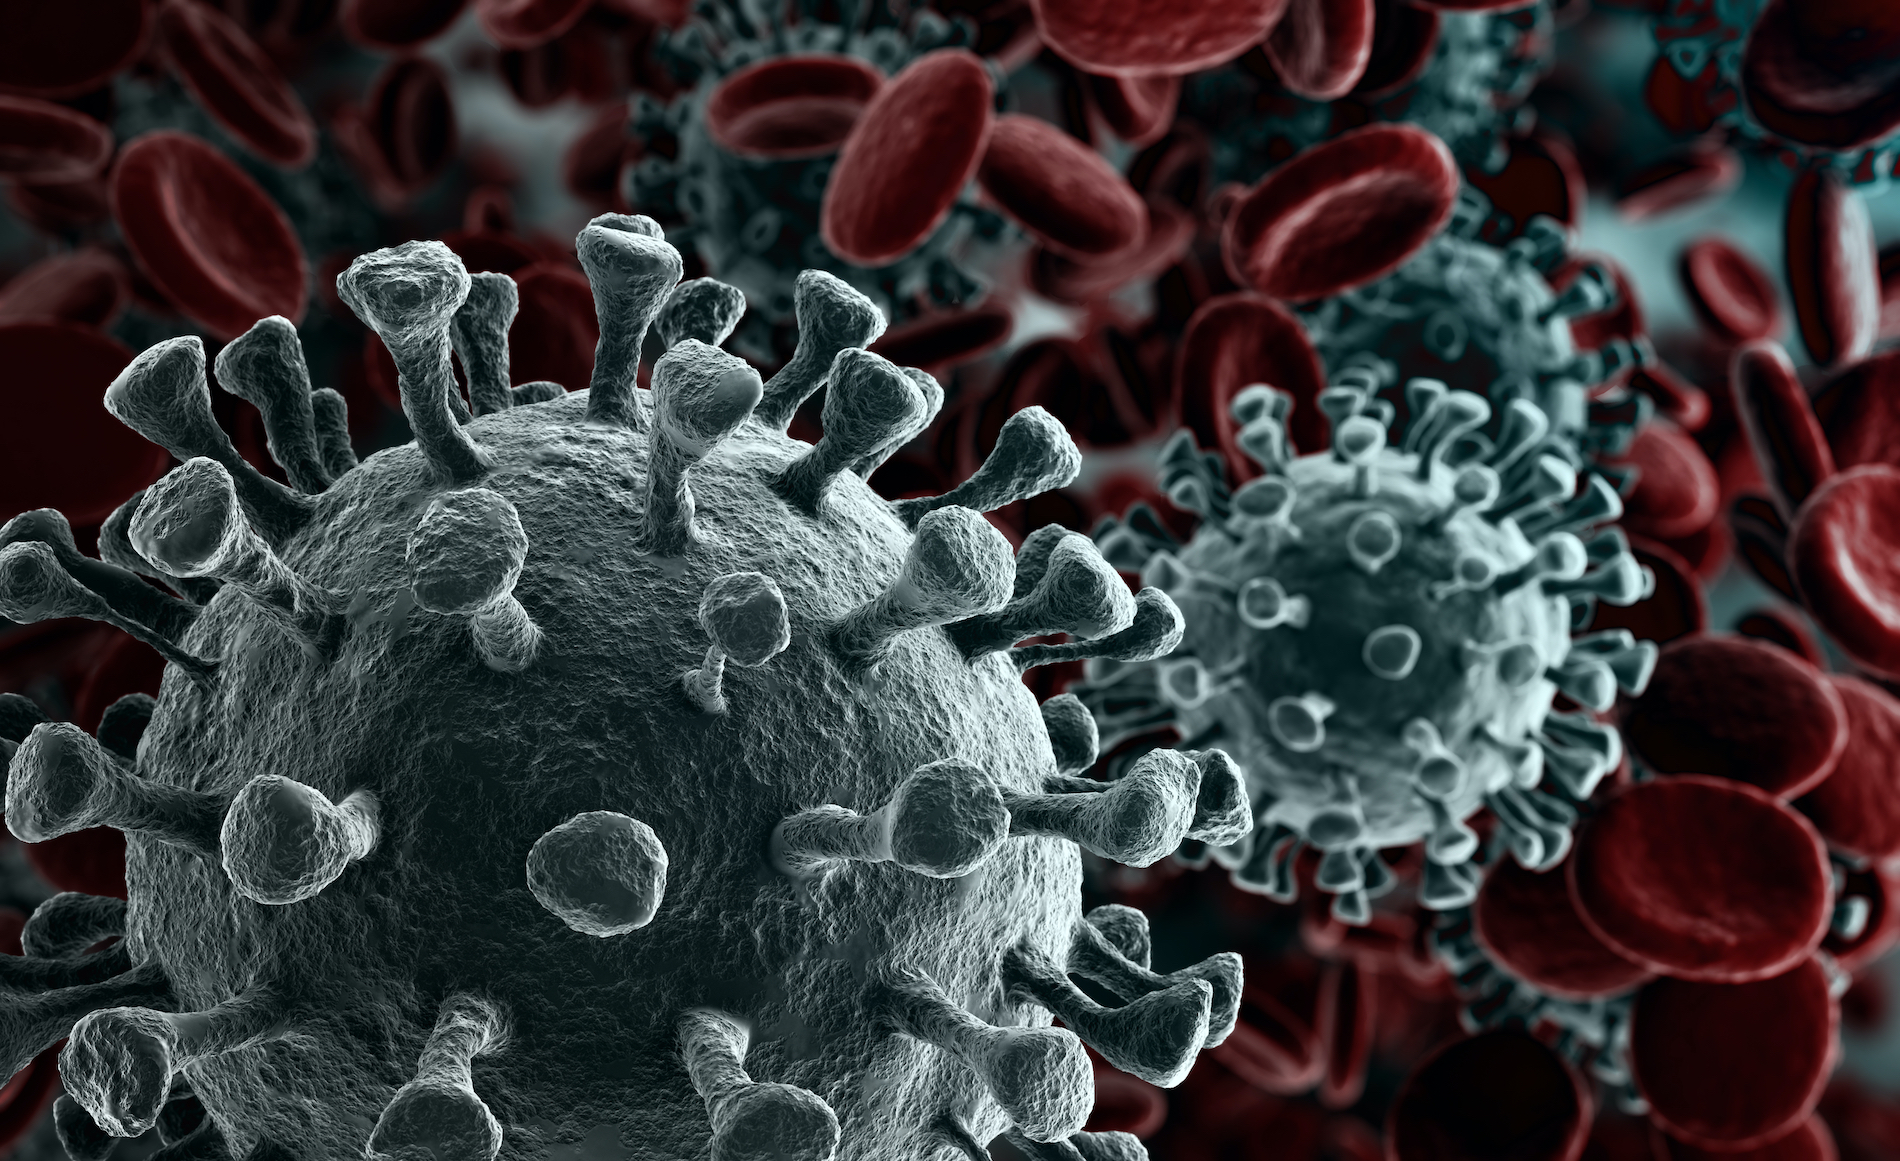 Científicos descubren más de 130.000 nuevos virus como el del COVID-19